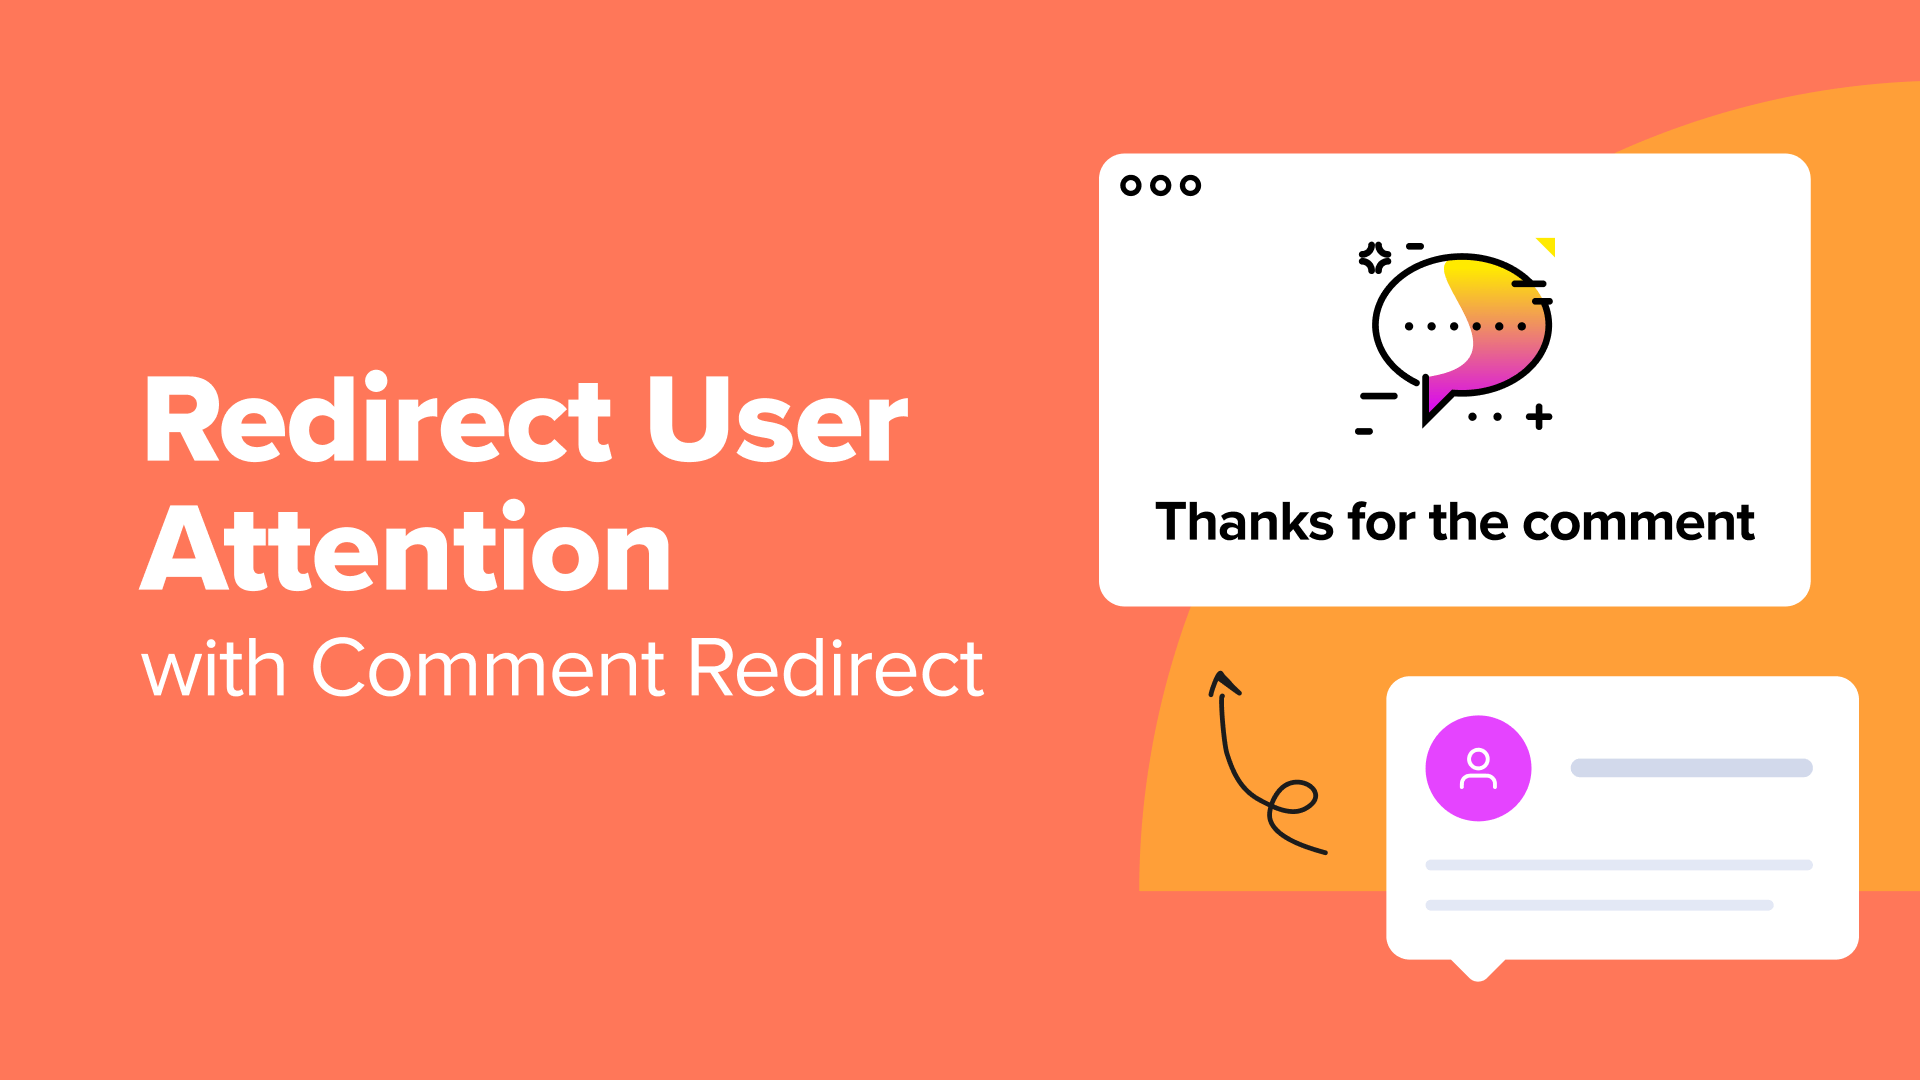 Come reindirizzare l'attenzione dell'utente con il reindirizzamento dei commenti